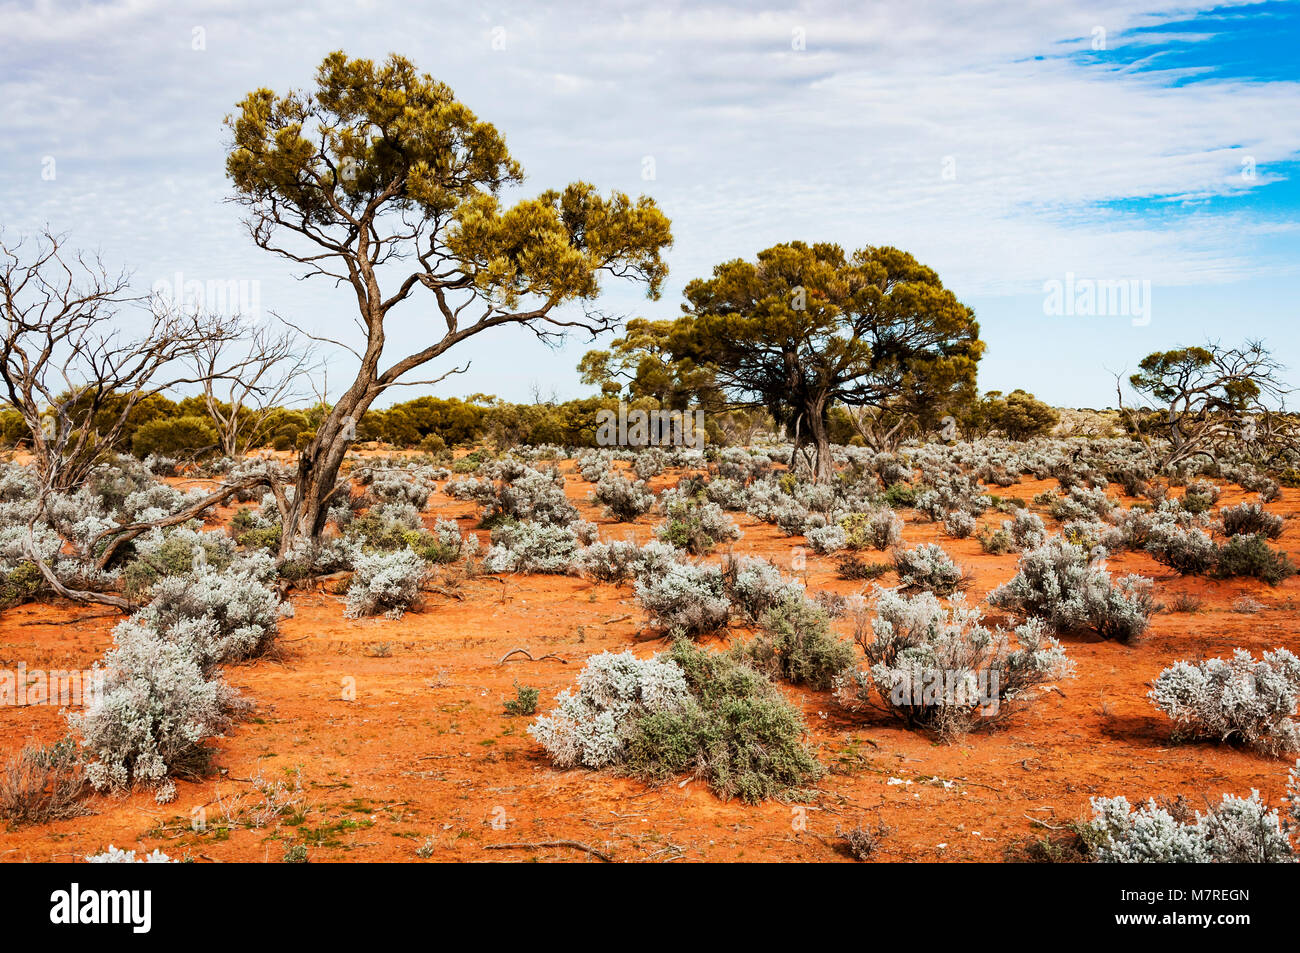 The Australian desert, the outback Stock Photo